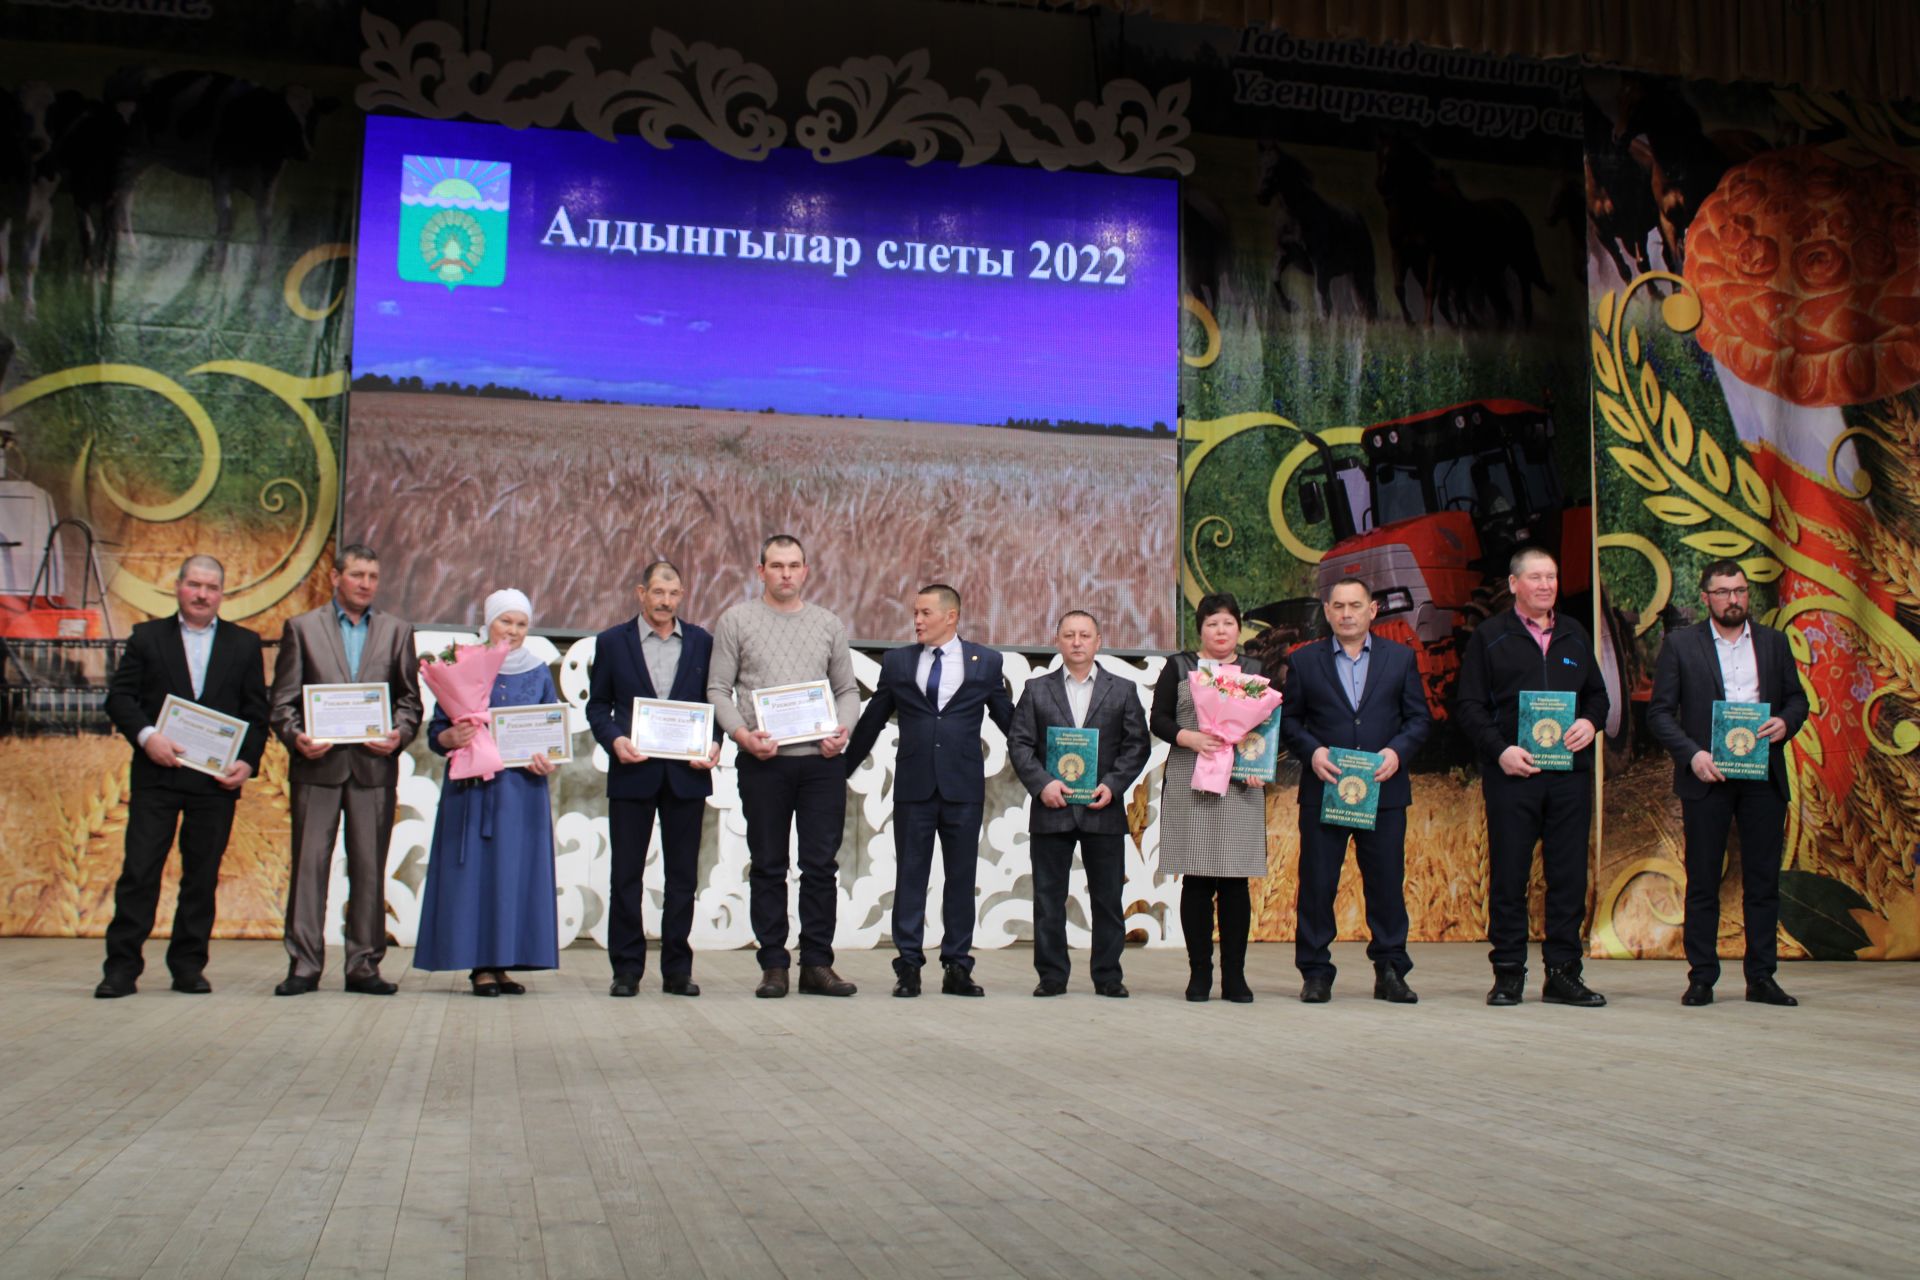 Актаныш муниципаль районының хезмәт алдынгыларын хөрмәтләү тантанасында- "Алдынгылар җыены- 2022" (фоторепортаж)